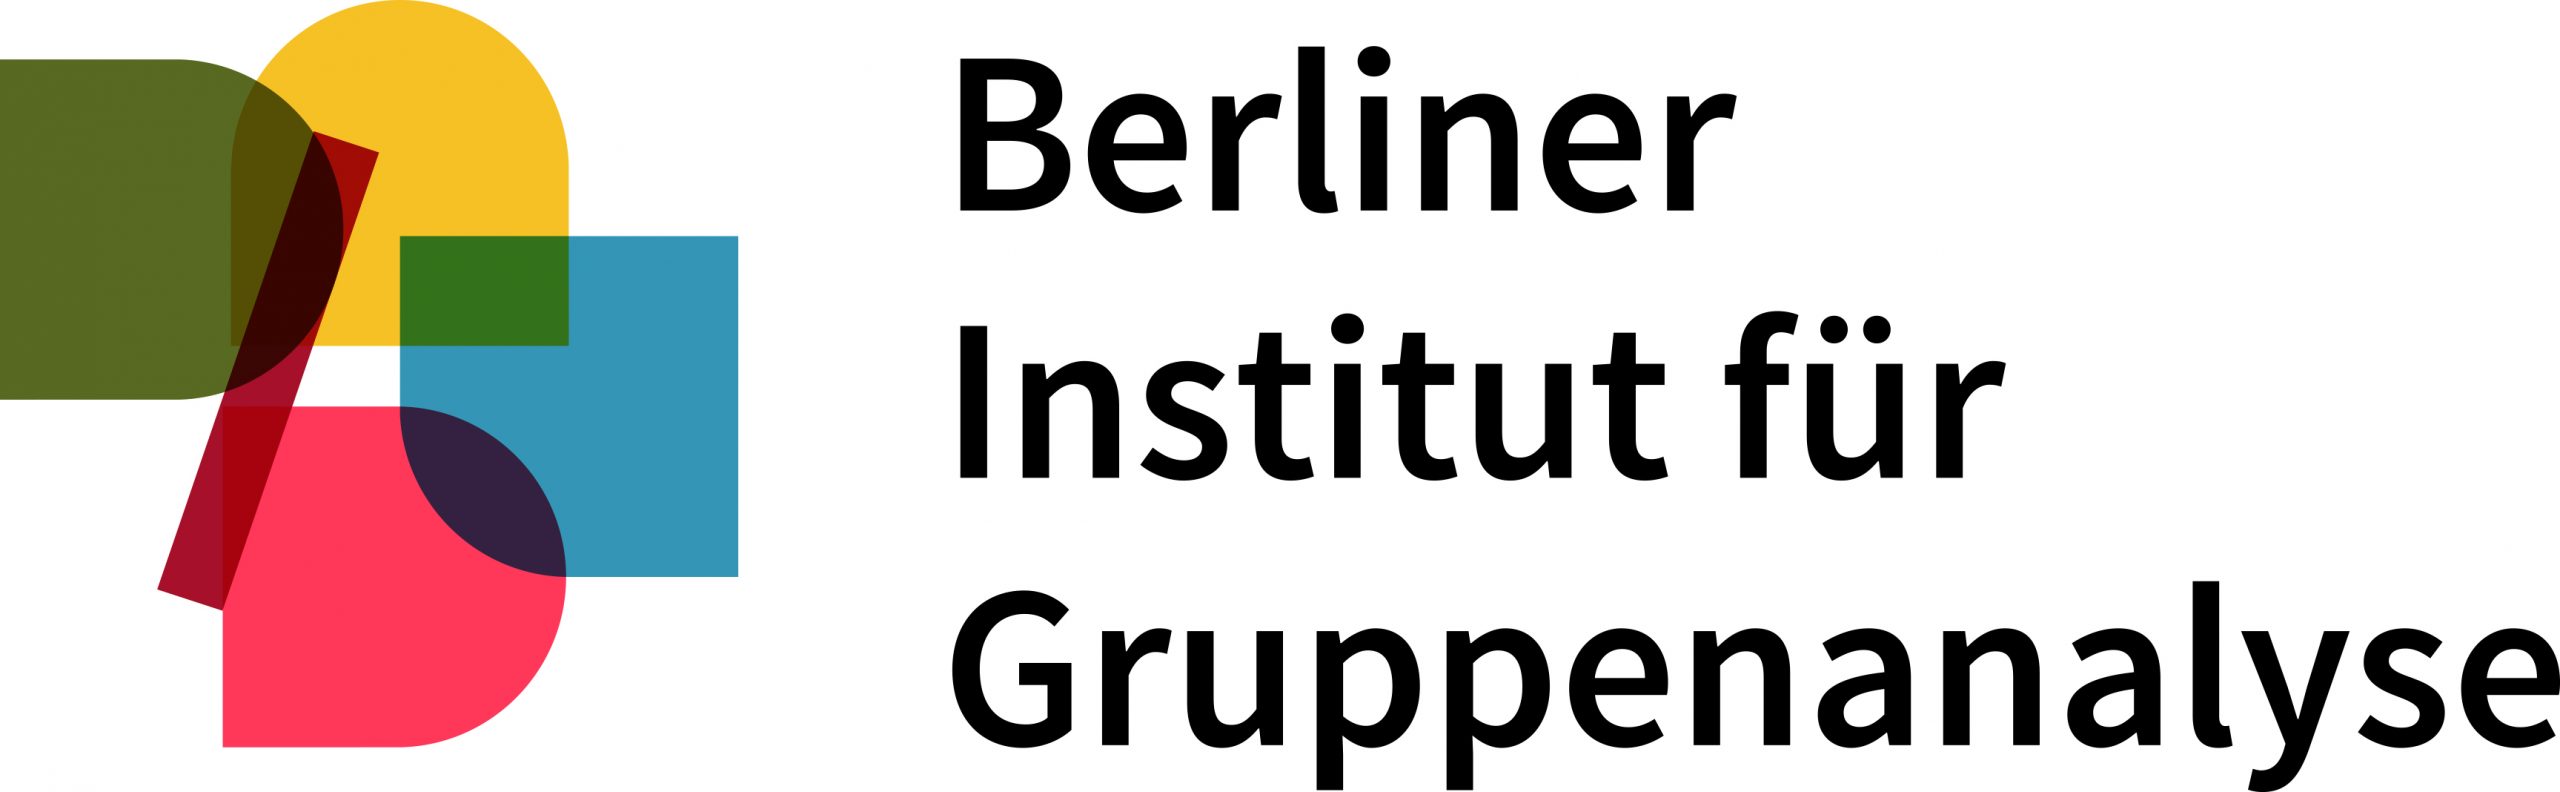 Zu sehen ist as Logo beziehungsweise die Grafik des Berliner Institut für Gruppenanalyse (BIG)